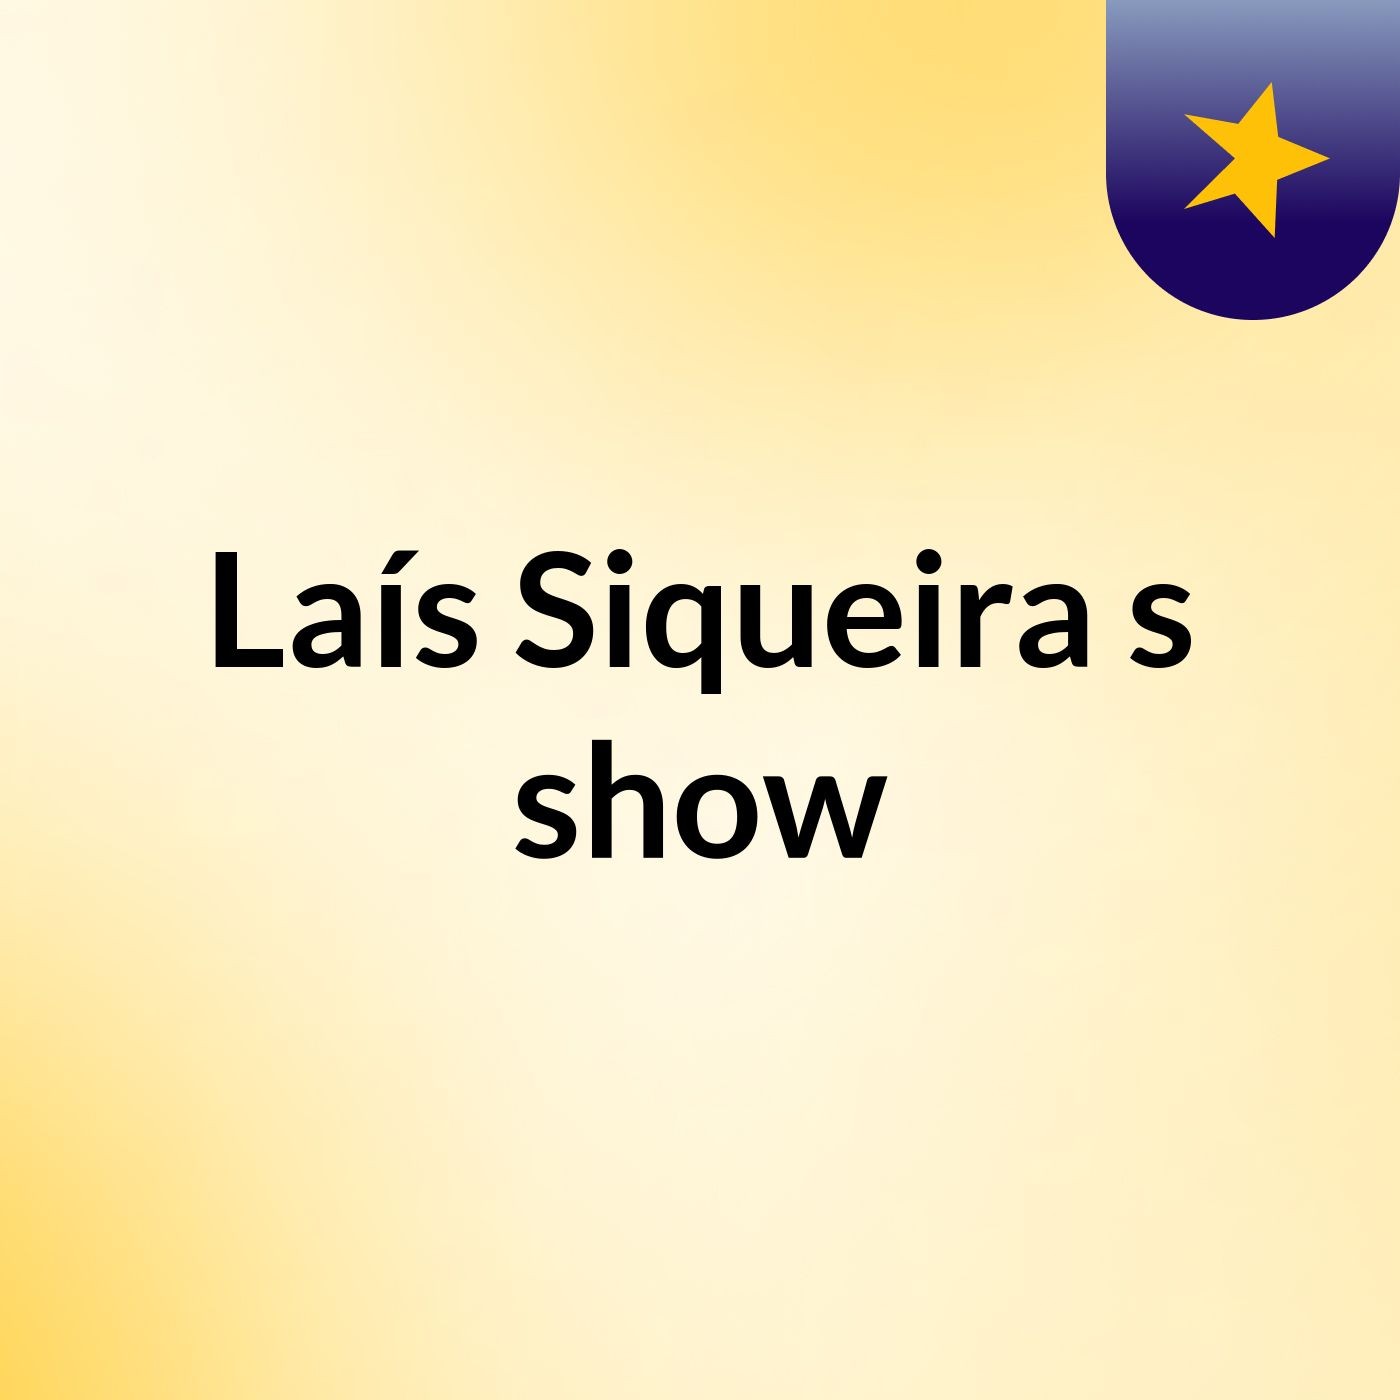 Laís Siqueira's show